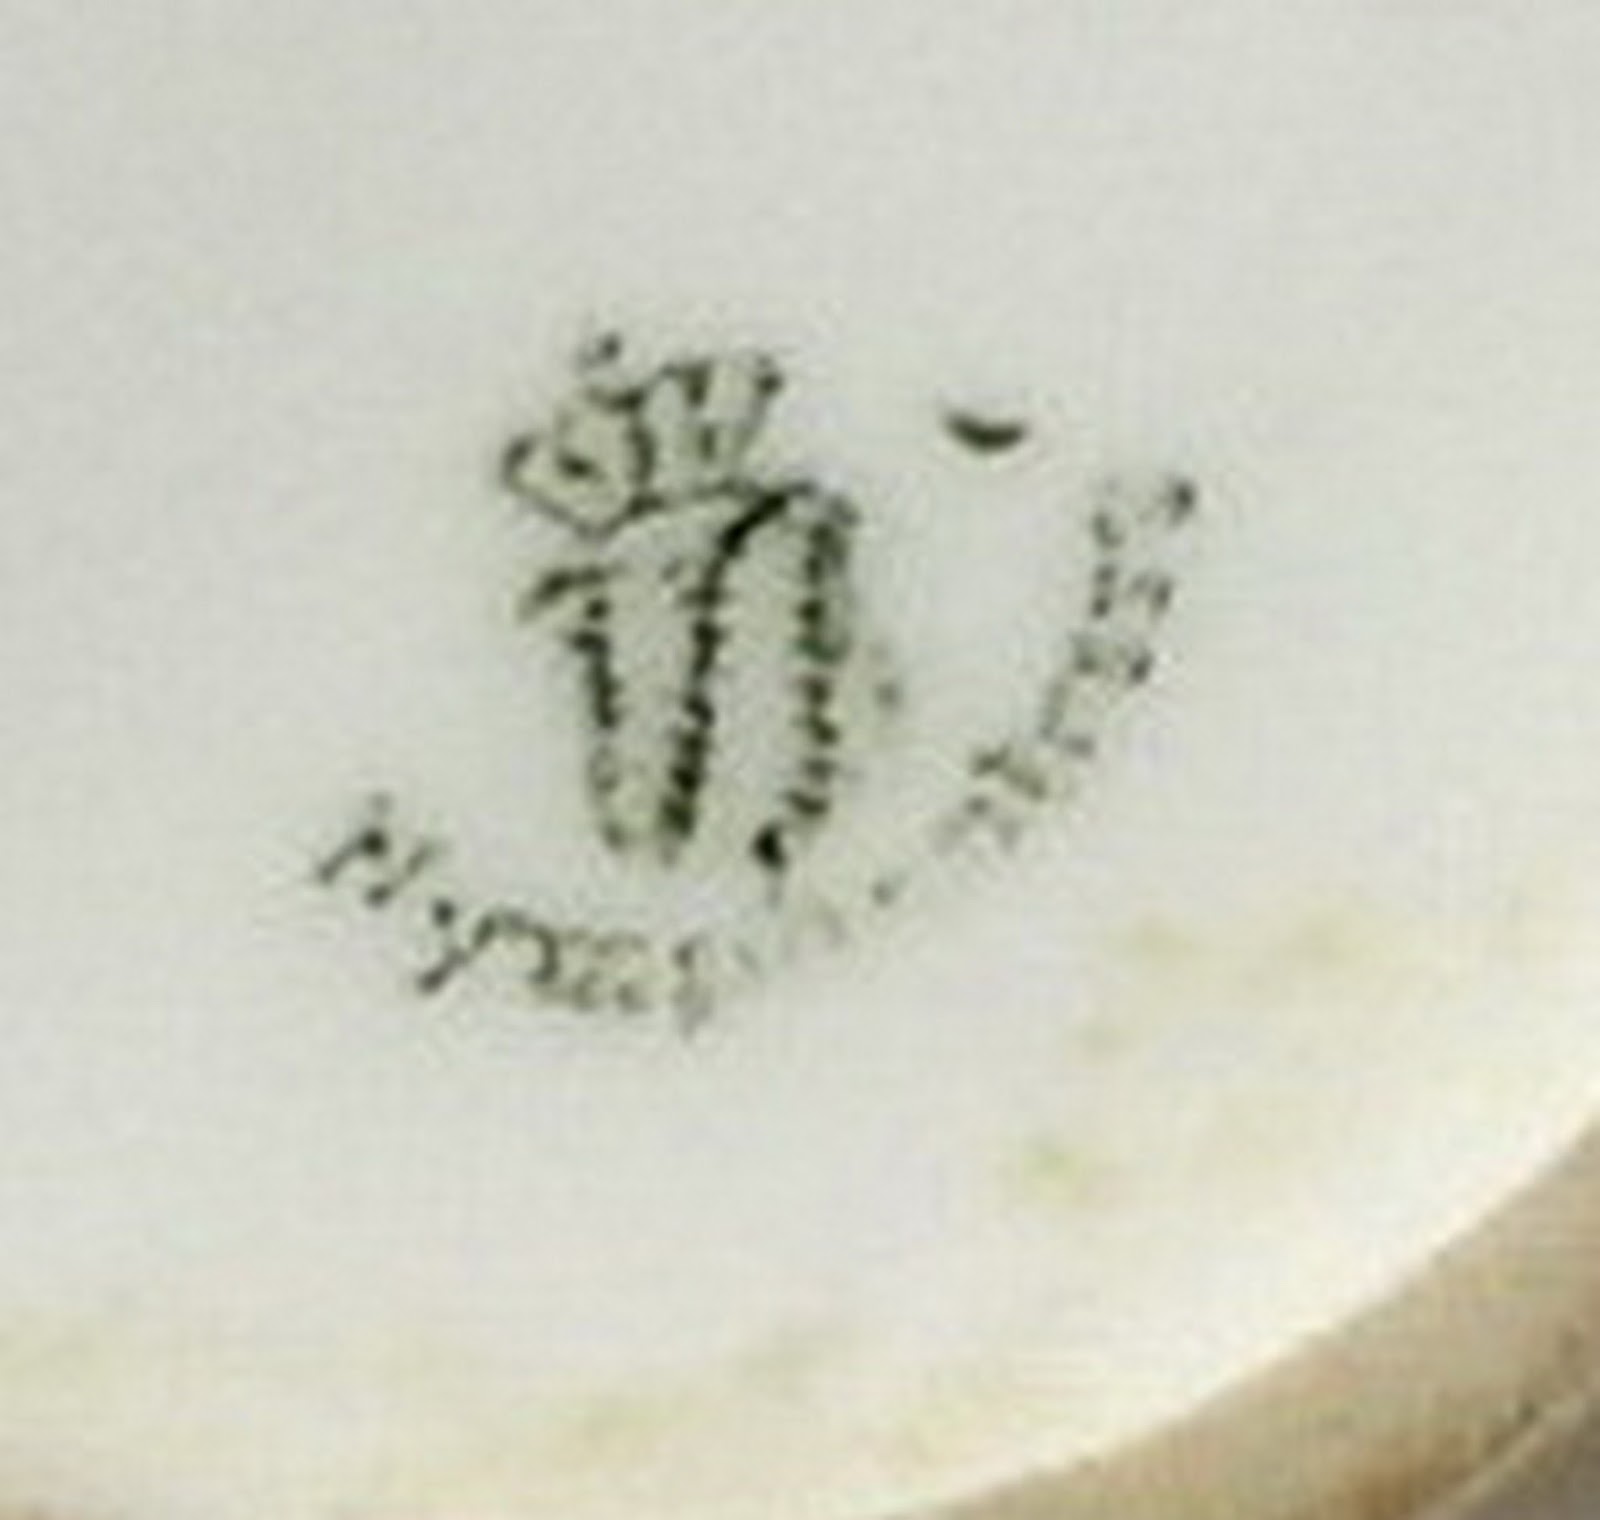 Dating nymphenburg porcelain marks